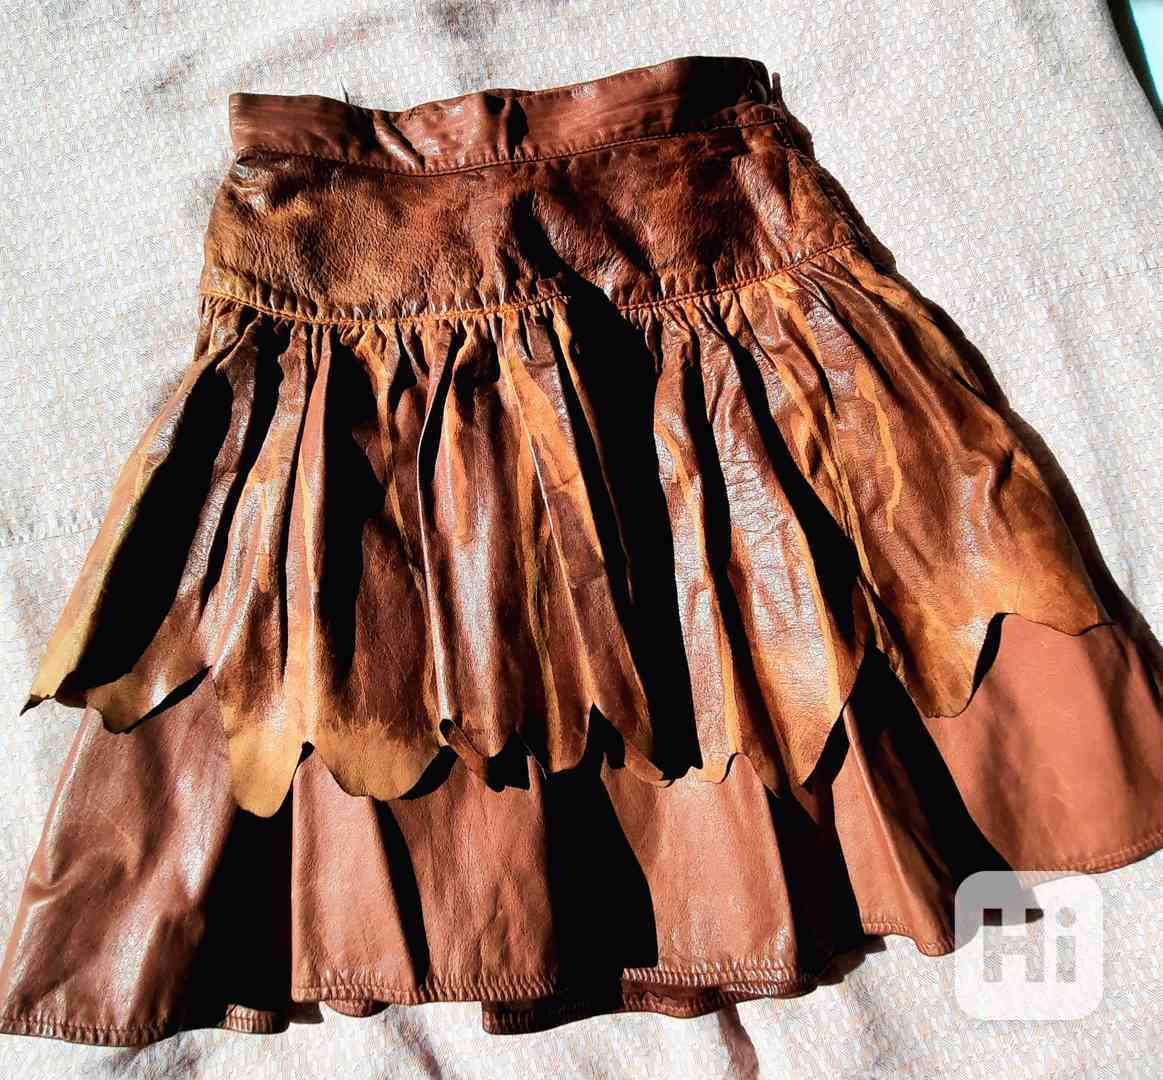 Kožená sukně, řasená - foto 1